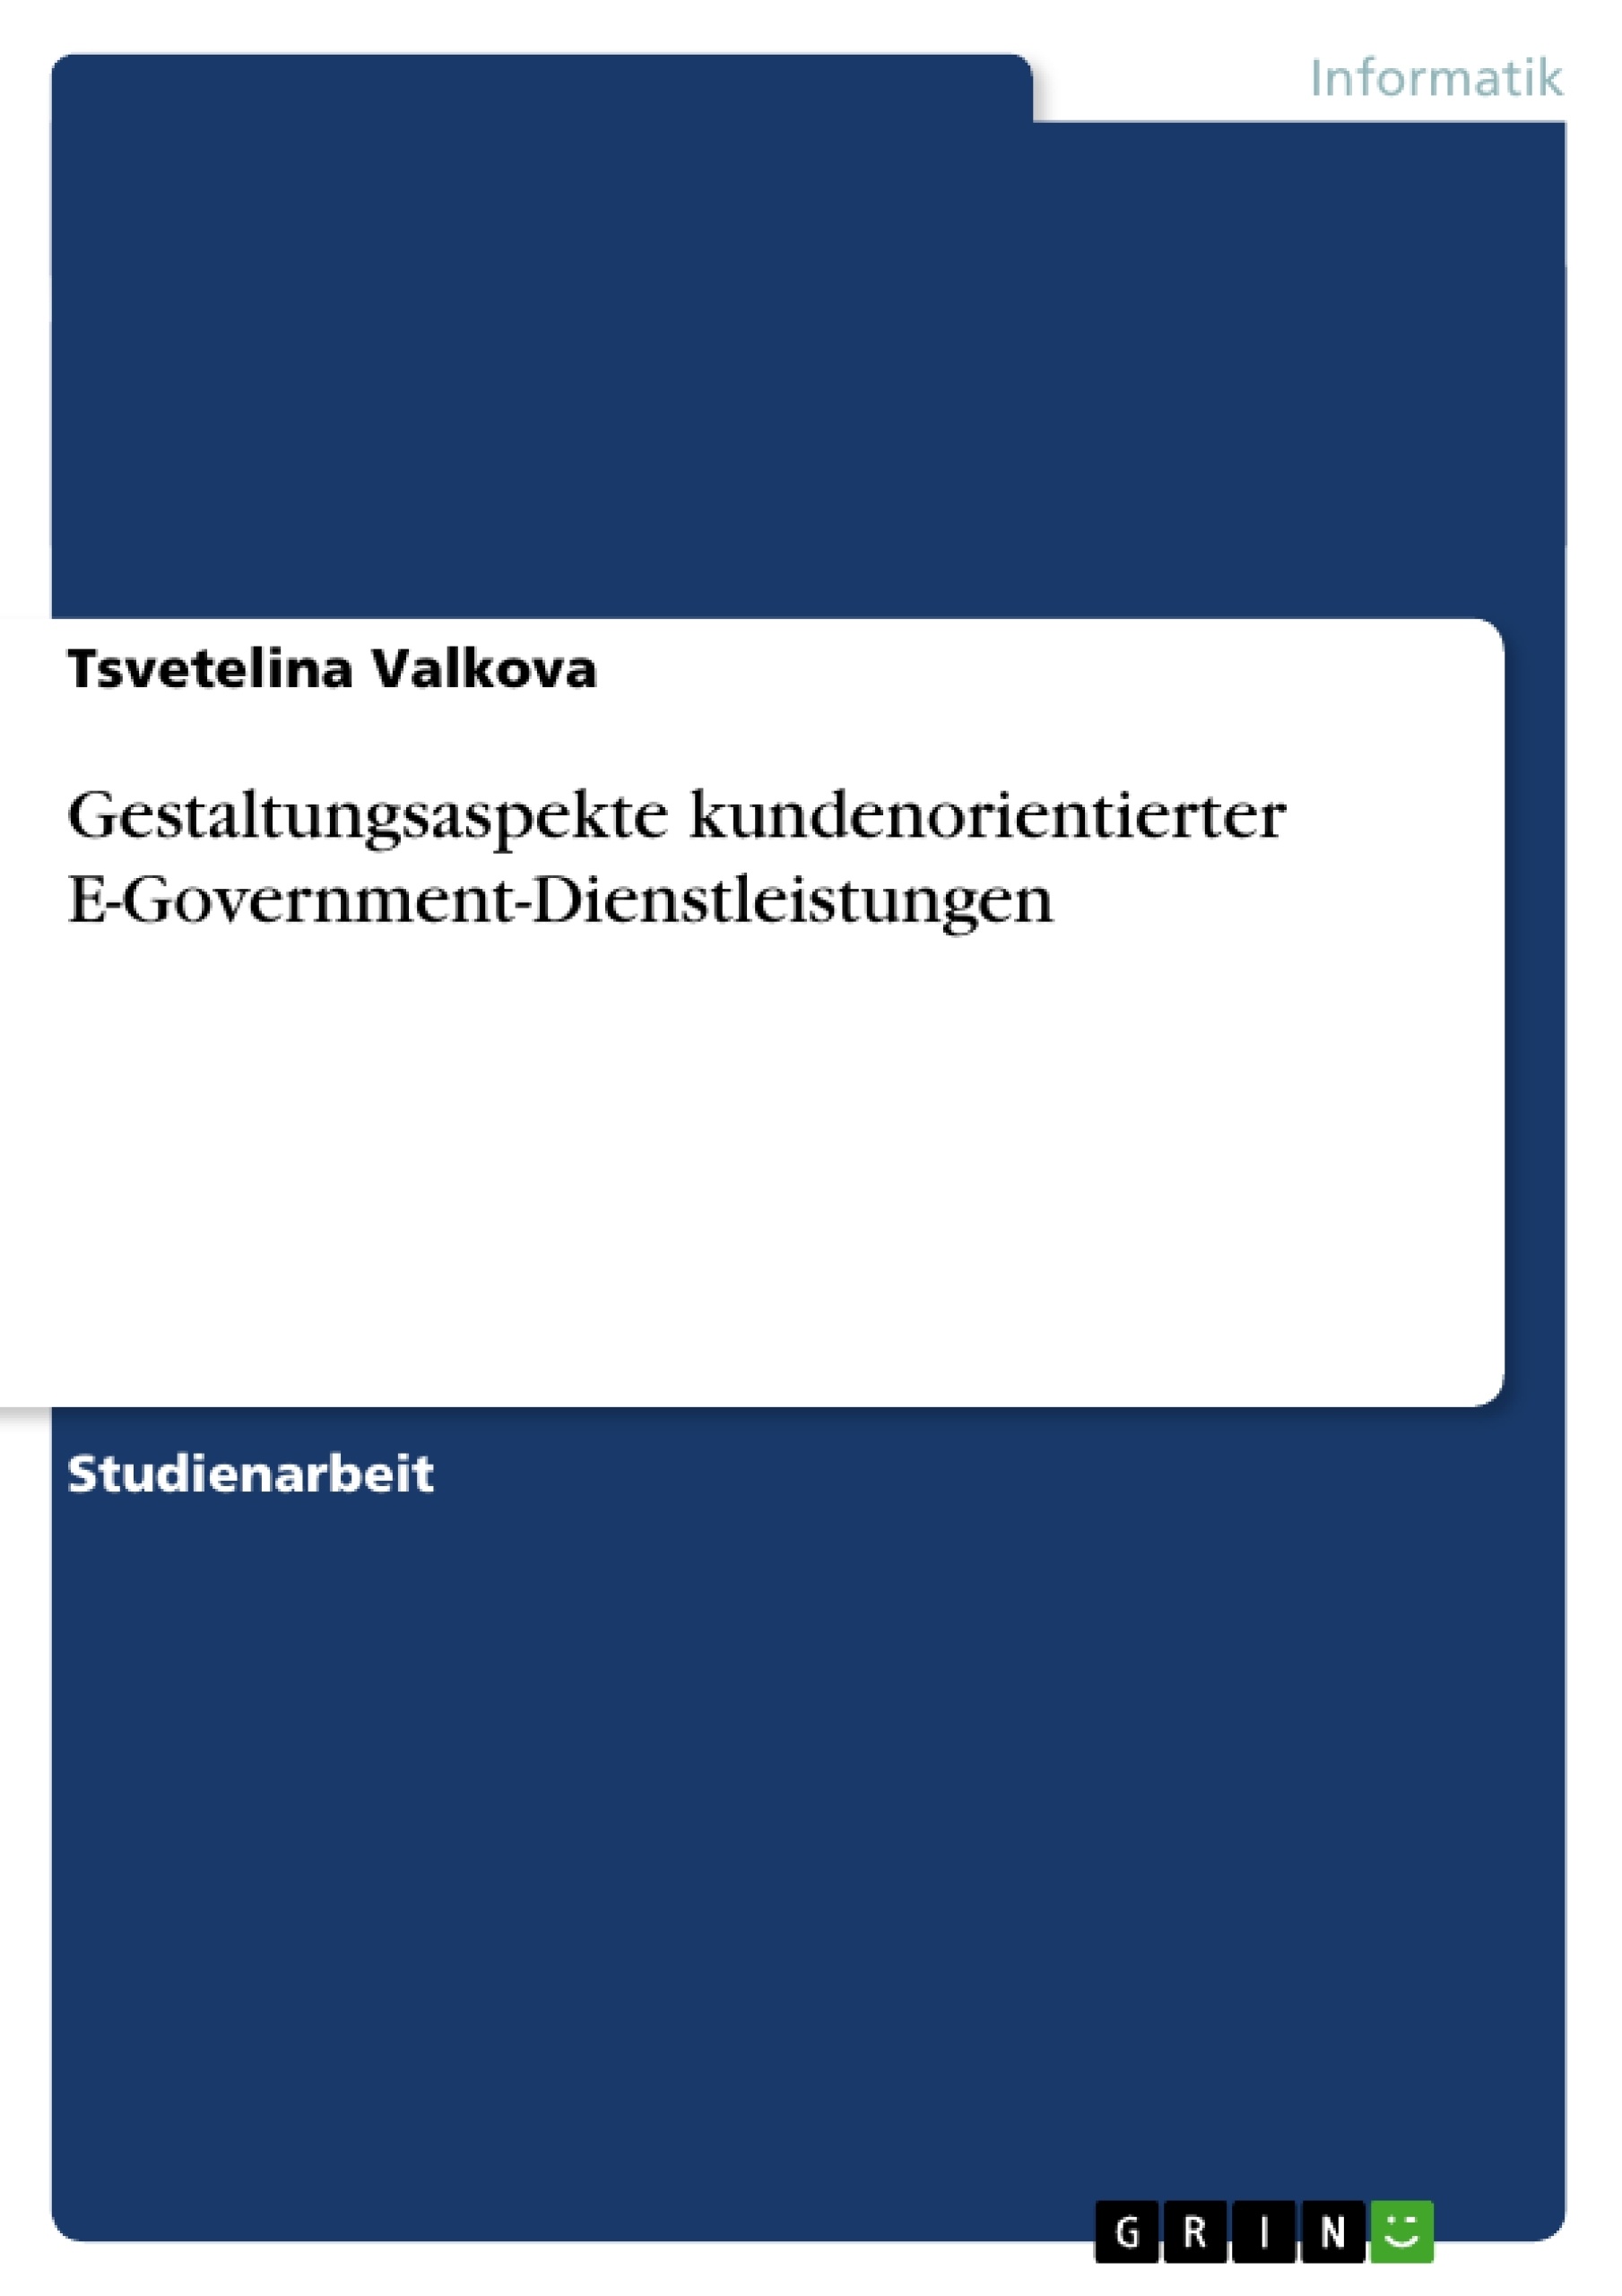 Título: Gestaltungsaspekte kundenorientierter E-Government-Dienstleistungen